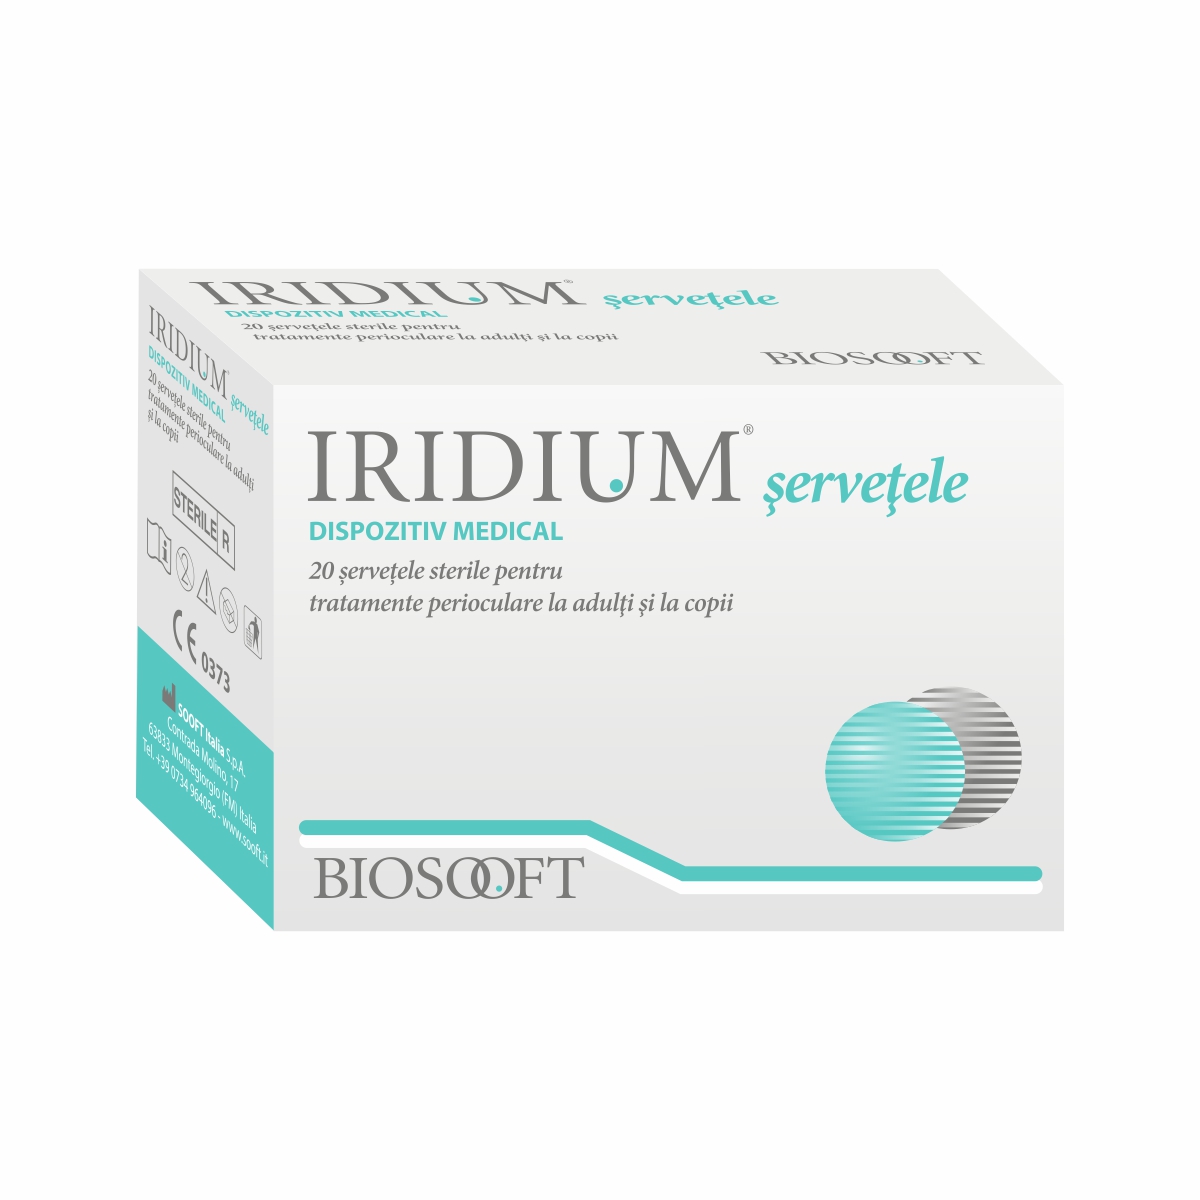 Servetele oftalmice - Iridium servetele sterile x 20 bucati, medik-on.ro